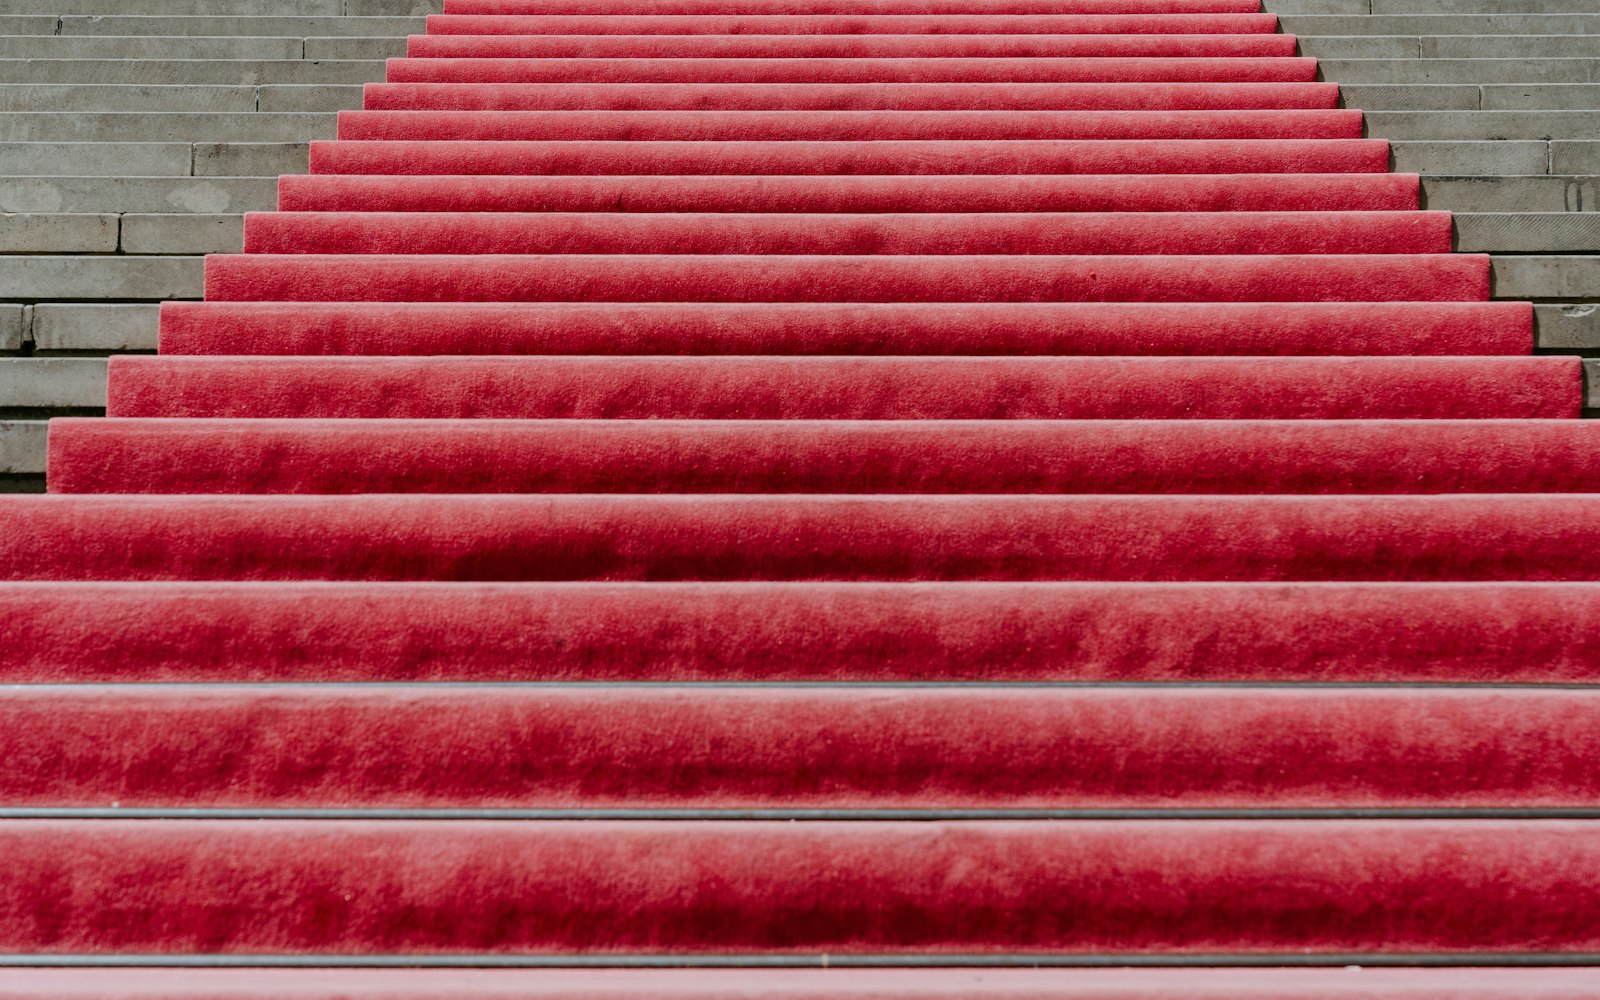 BAFTA Red Carpet Looks We Loved